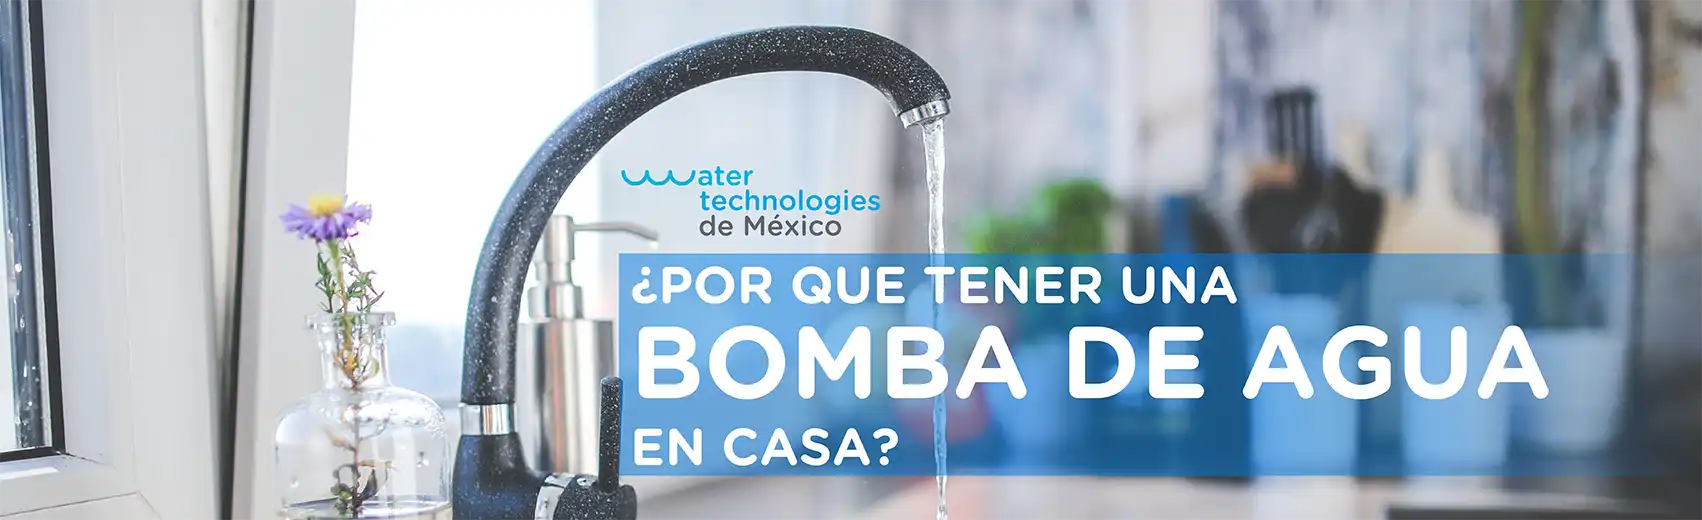 Por que tener una bomba de agua en casa? - Water Technologies de México